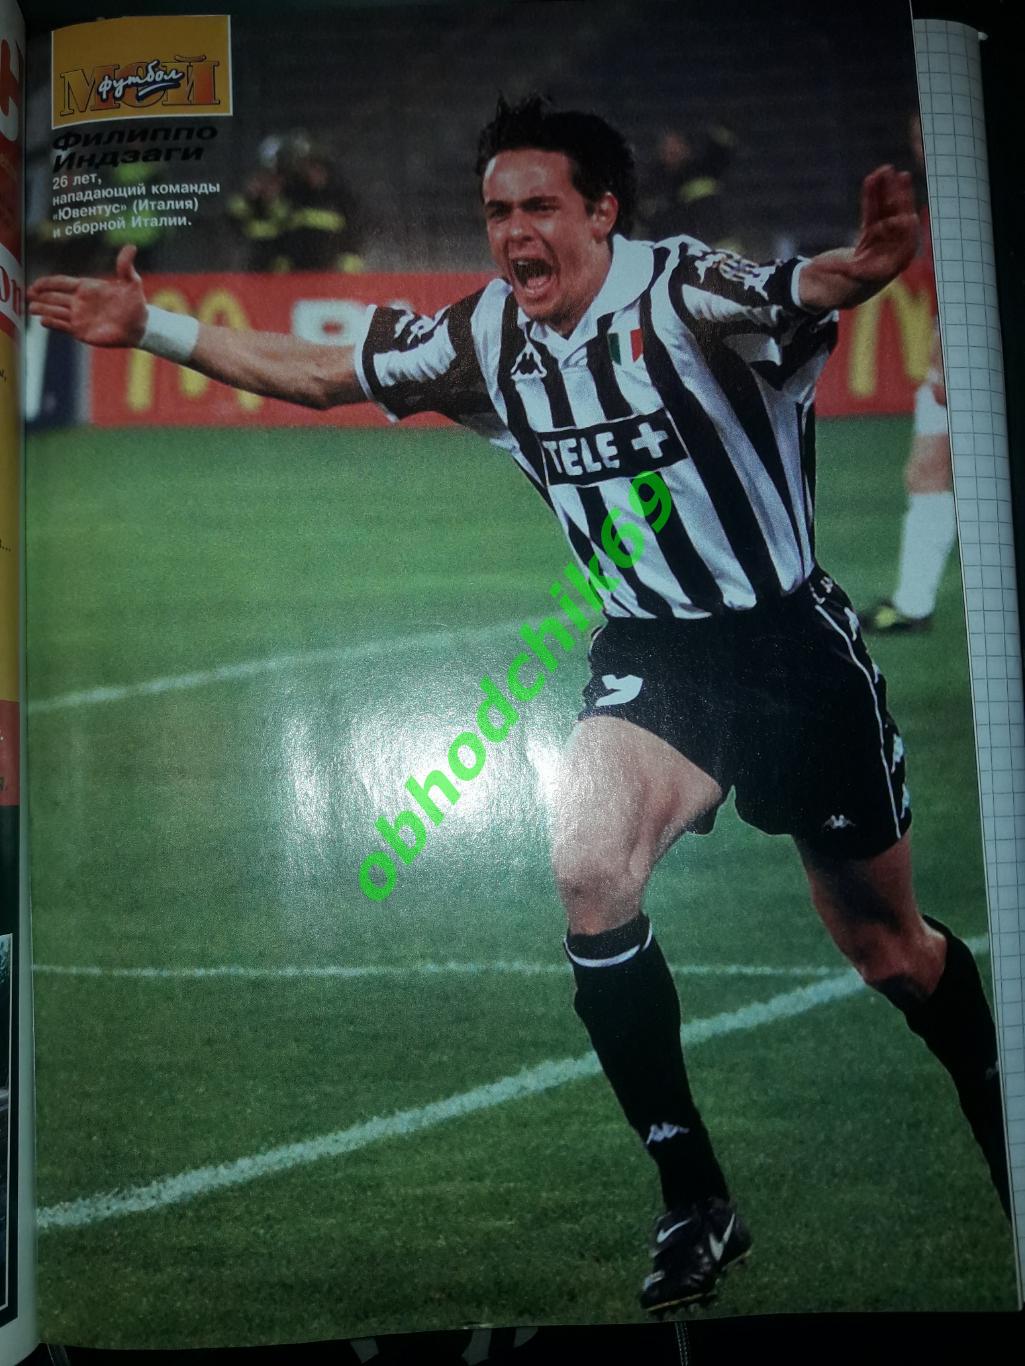 Журнал Мой Футбол #16_декабрь 1999 ( постеры Индзаги, Бергкамп, Робсон) 1